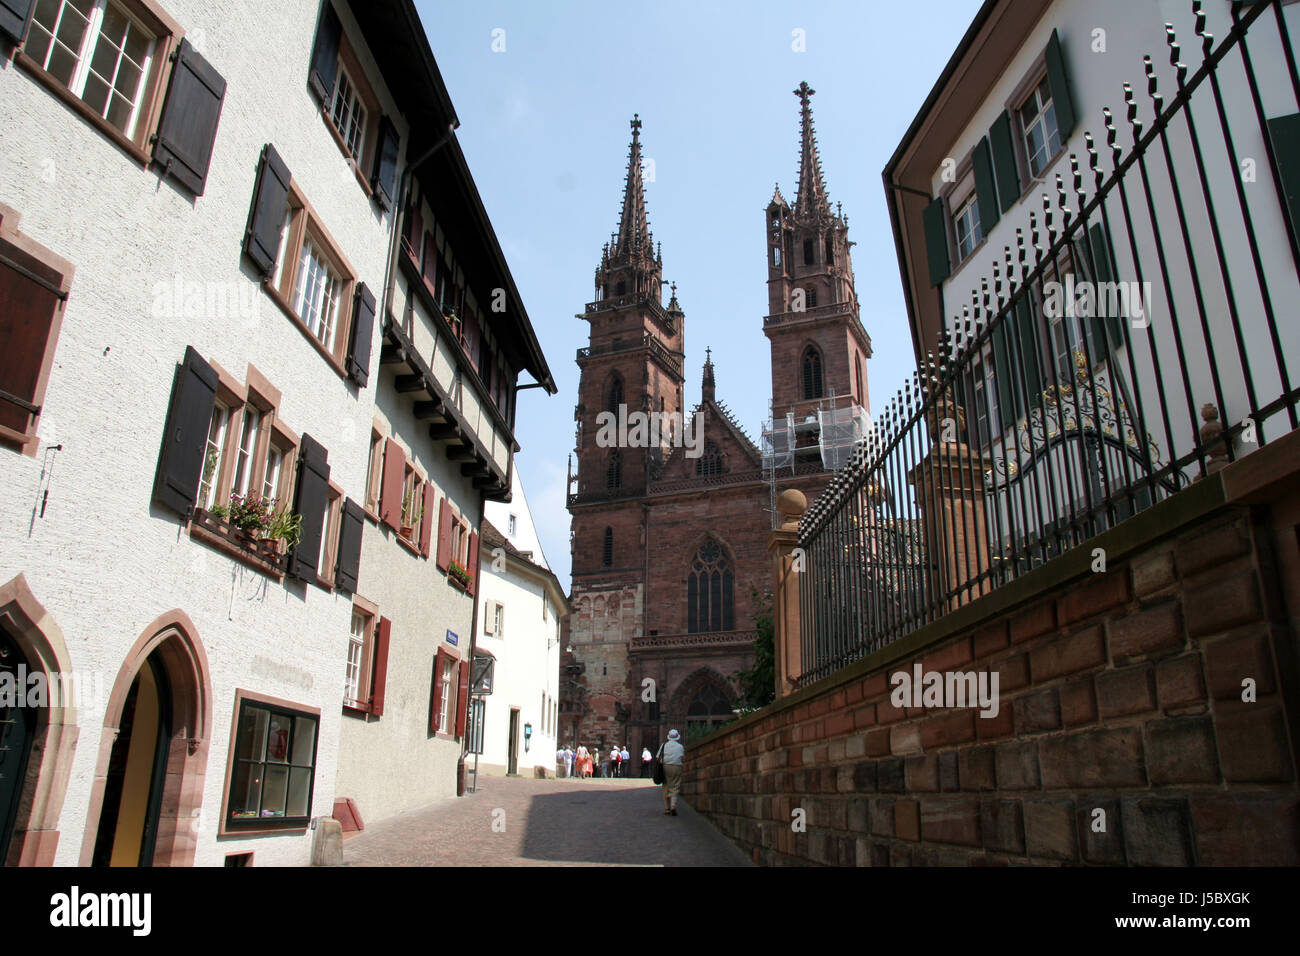 Stadt Hafen Rhein Schweiz Stadtbild Häfen Stadt Basel anzeigen Stockfoto